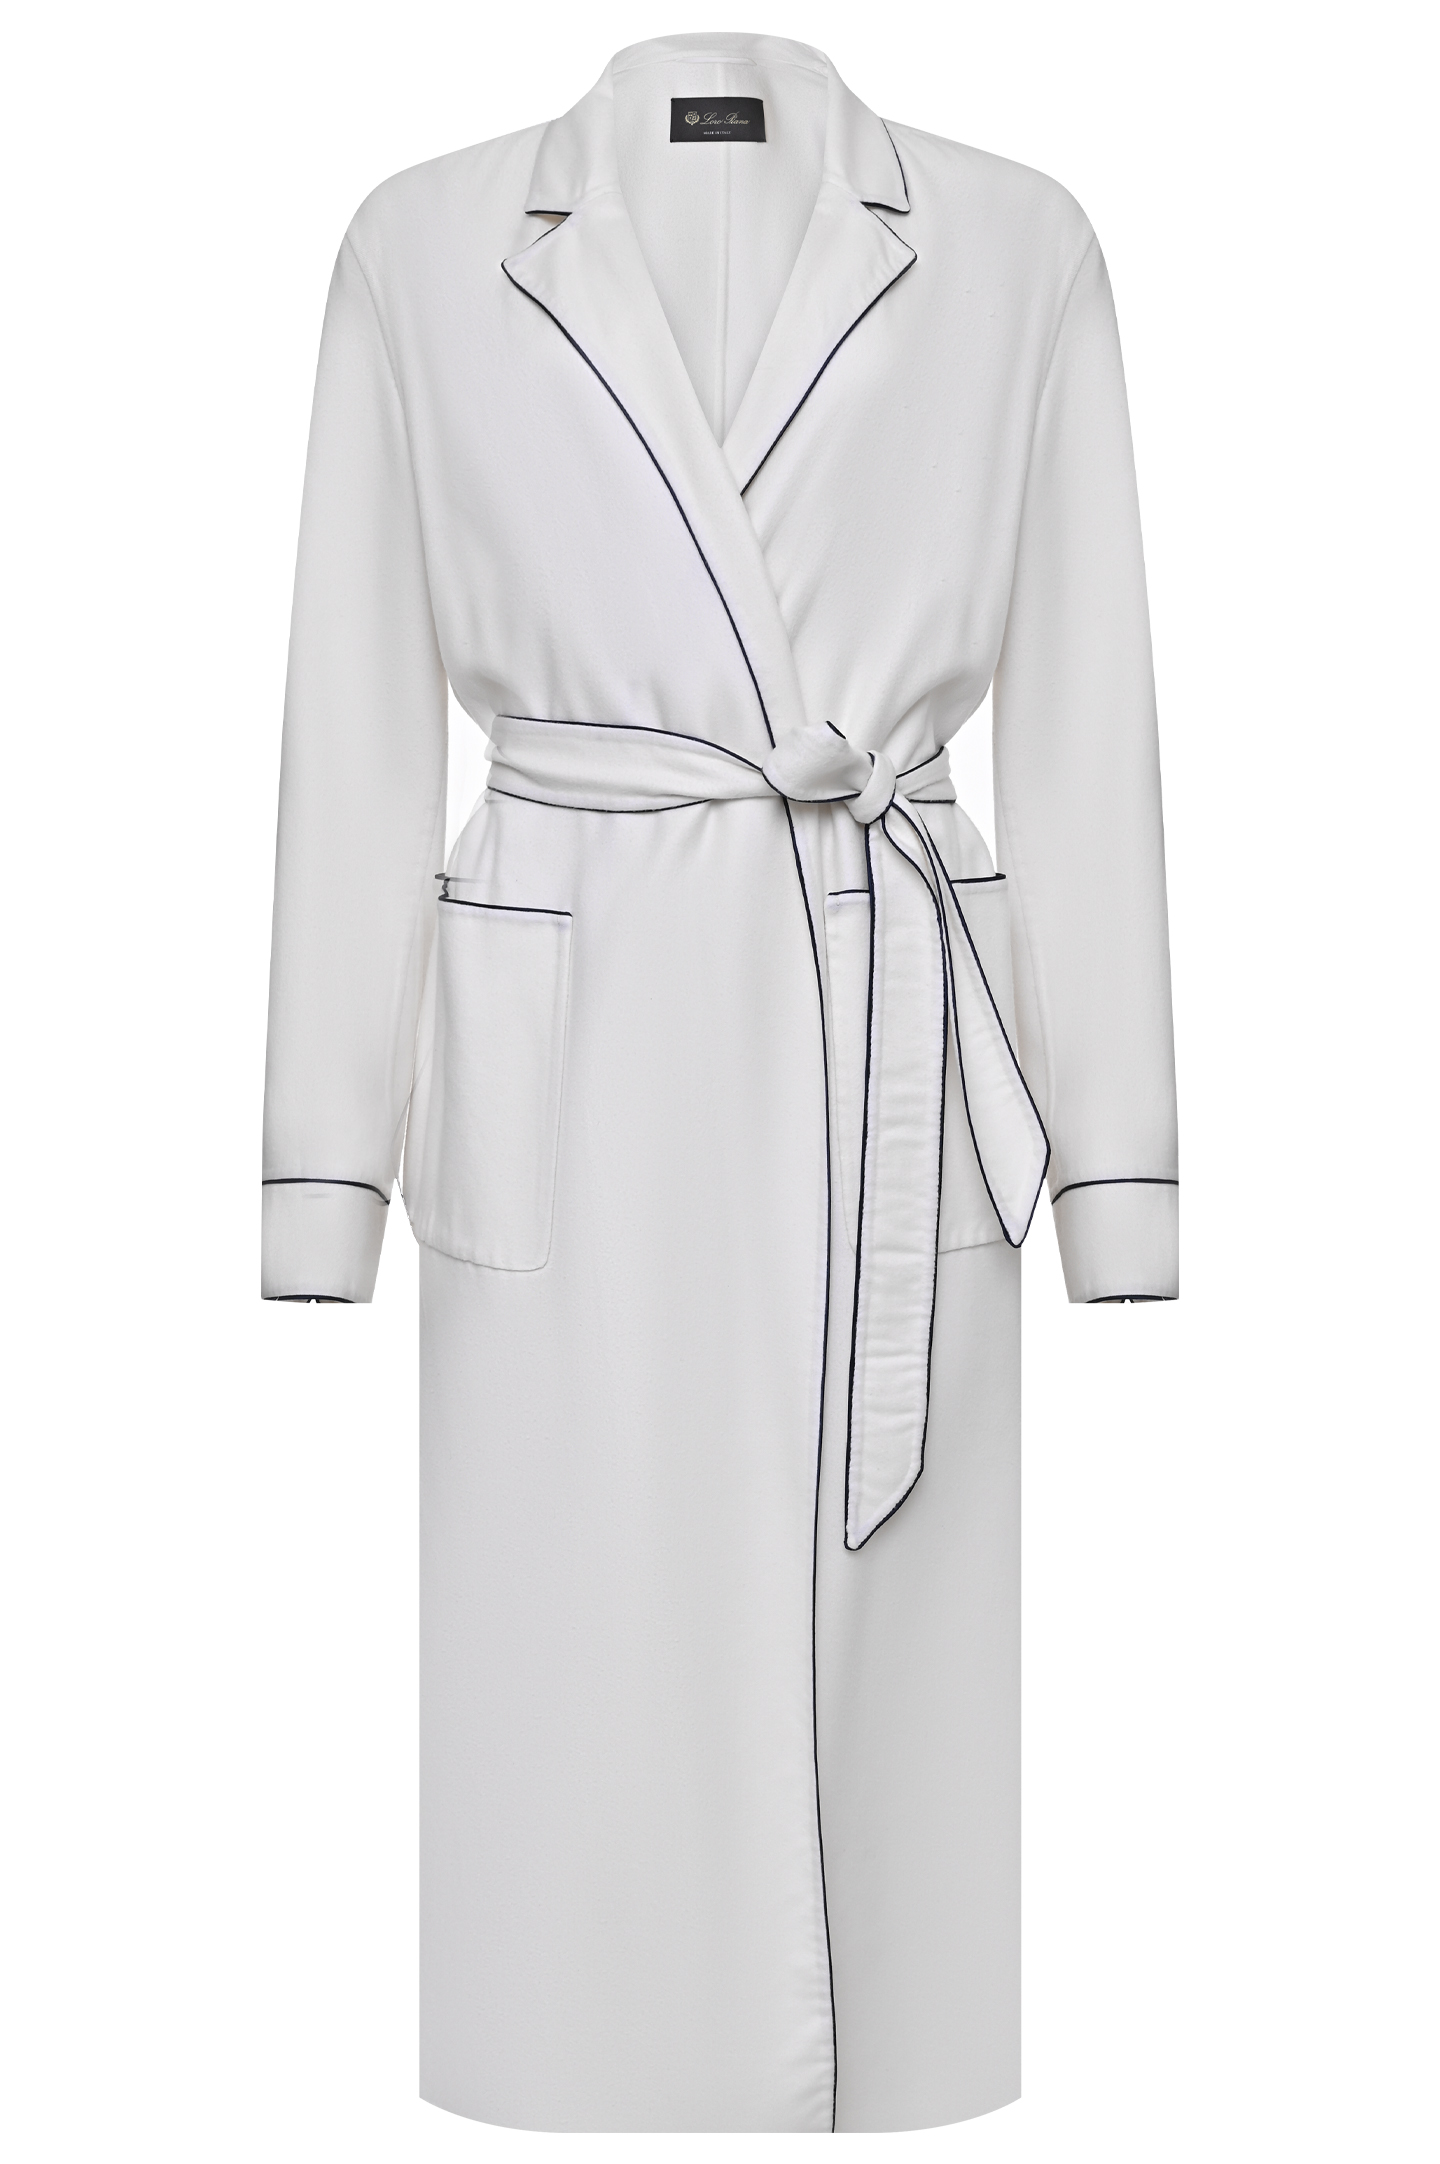 Пальто LORO PIANA F1-FAI43431614, цвет: Белый, Женский